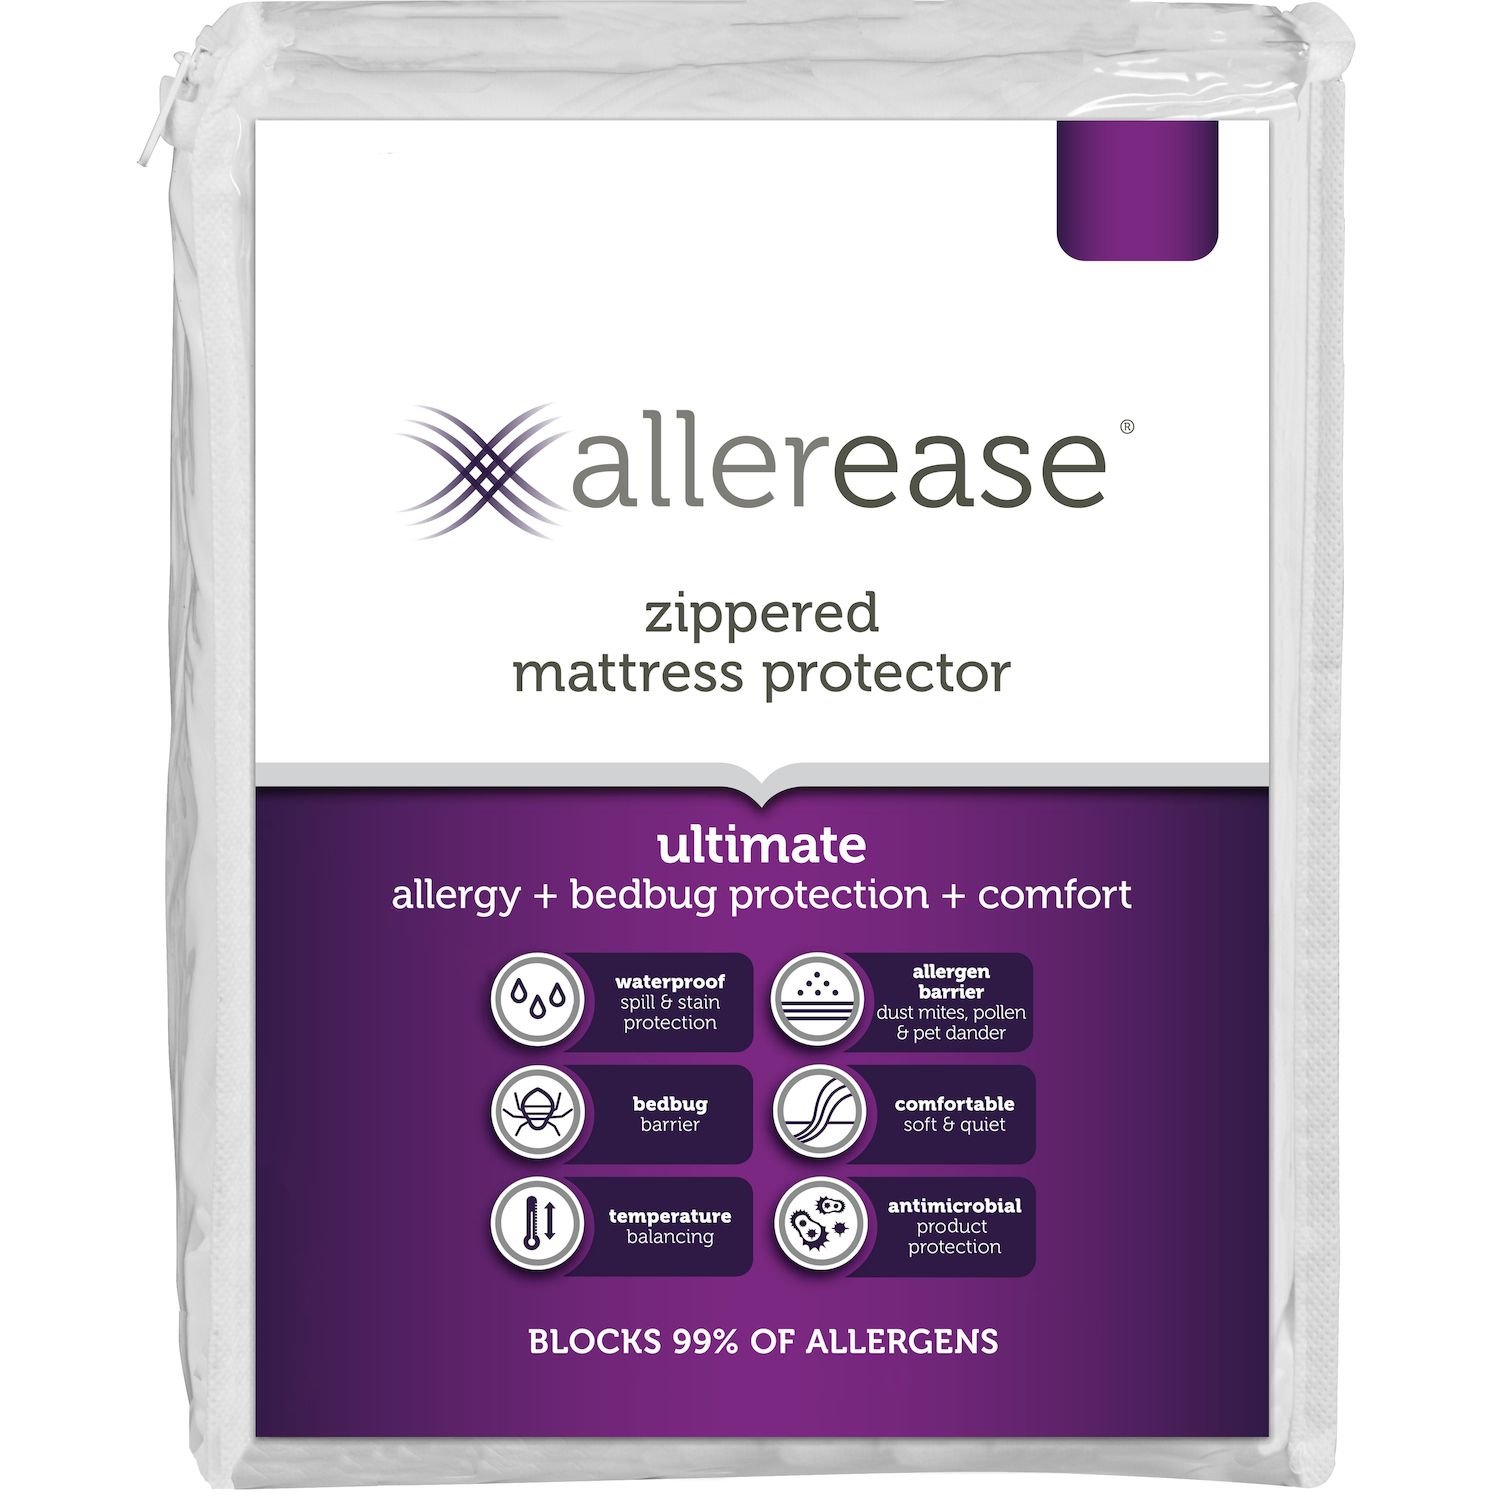 Pristine® Dust Mite & Allergen Barrier 15 Mattress Covers